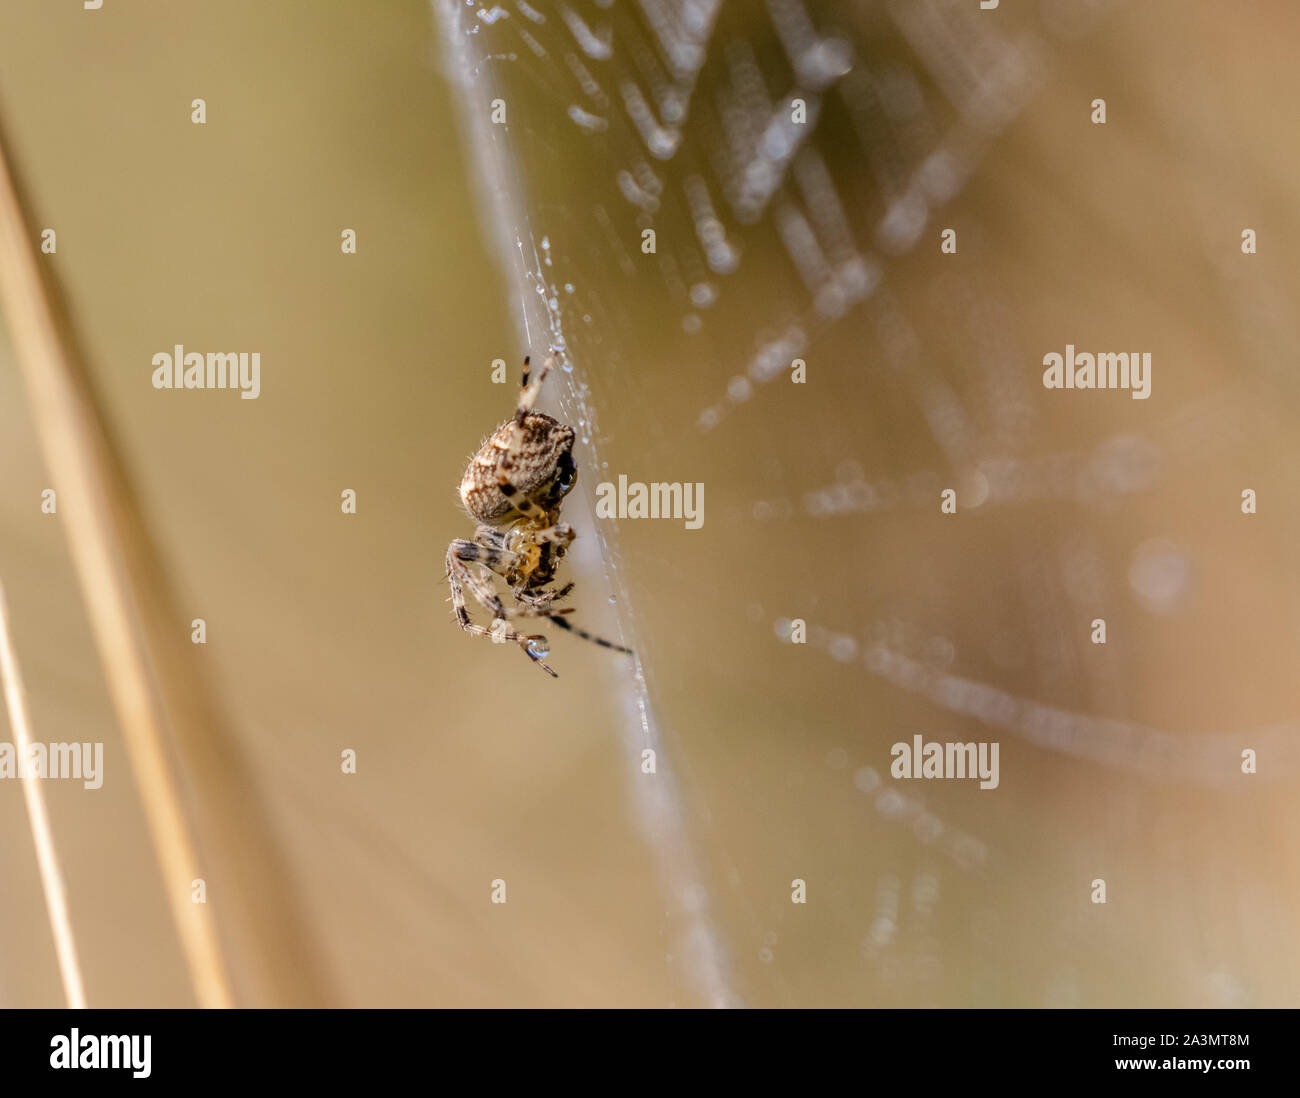 A  European Garden Spider spinning a web. Stock Photo